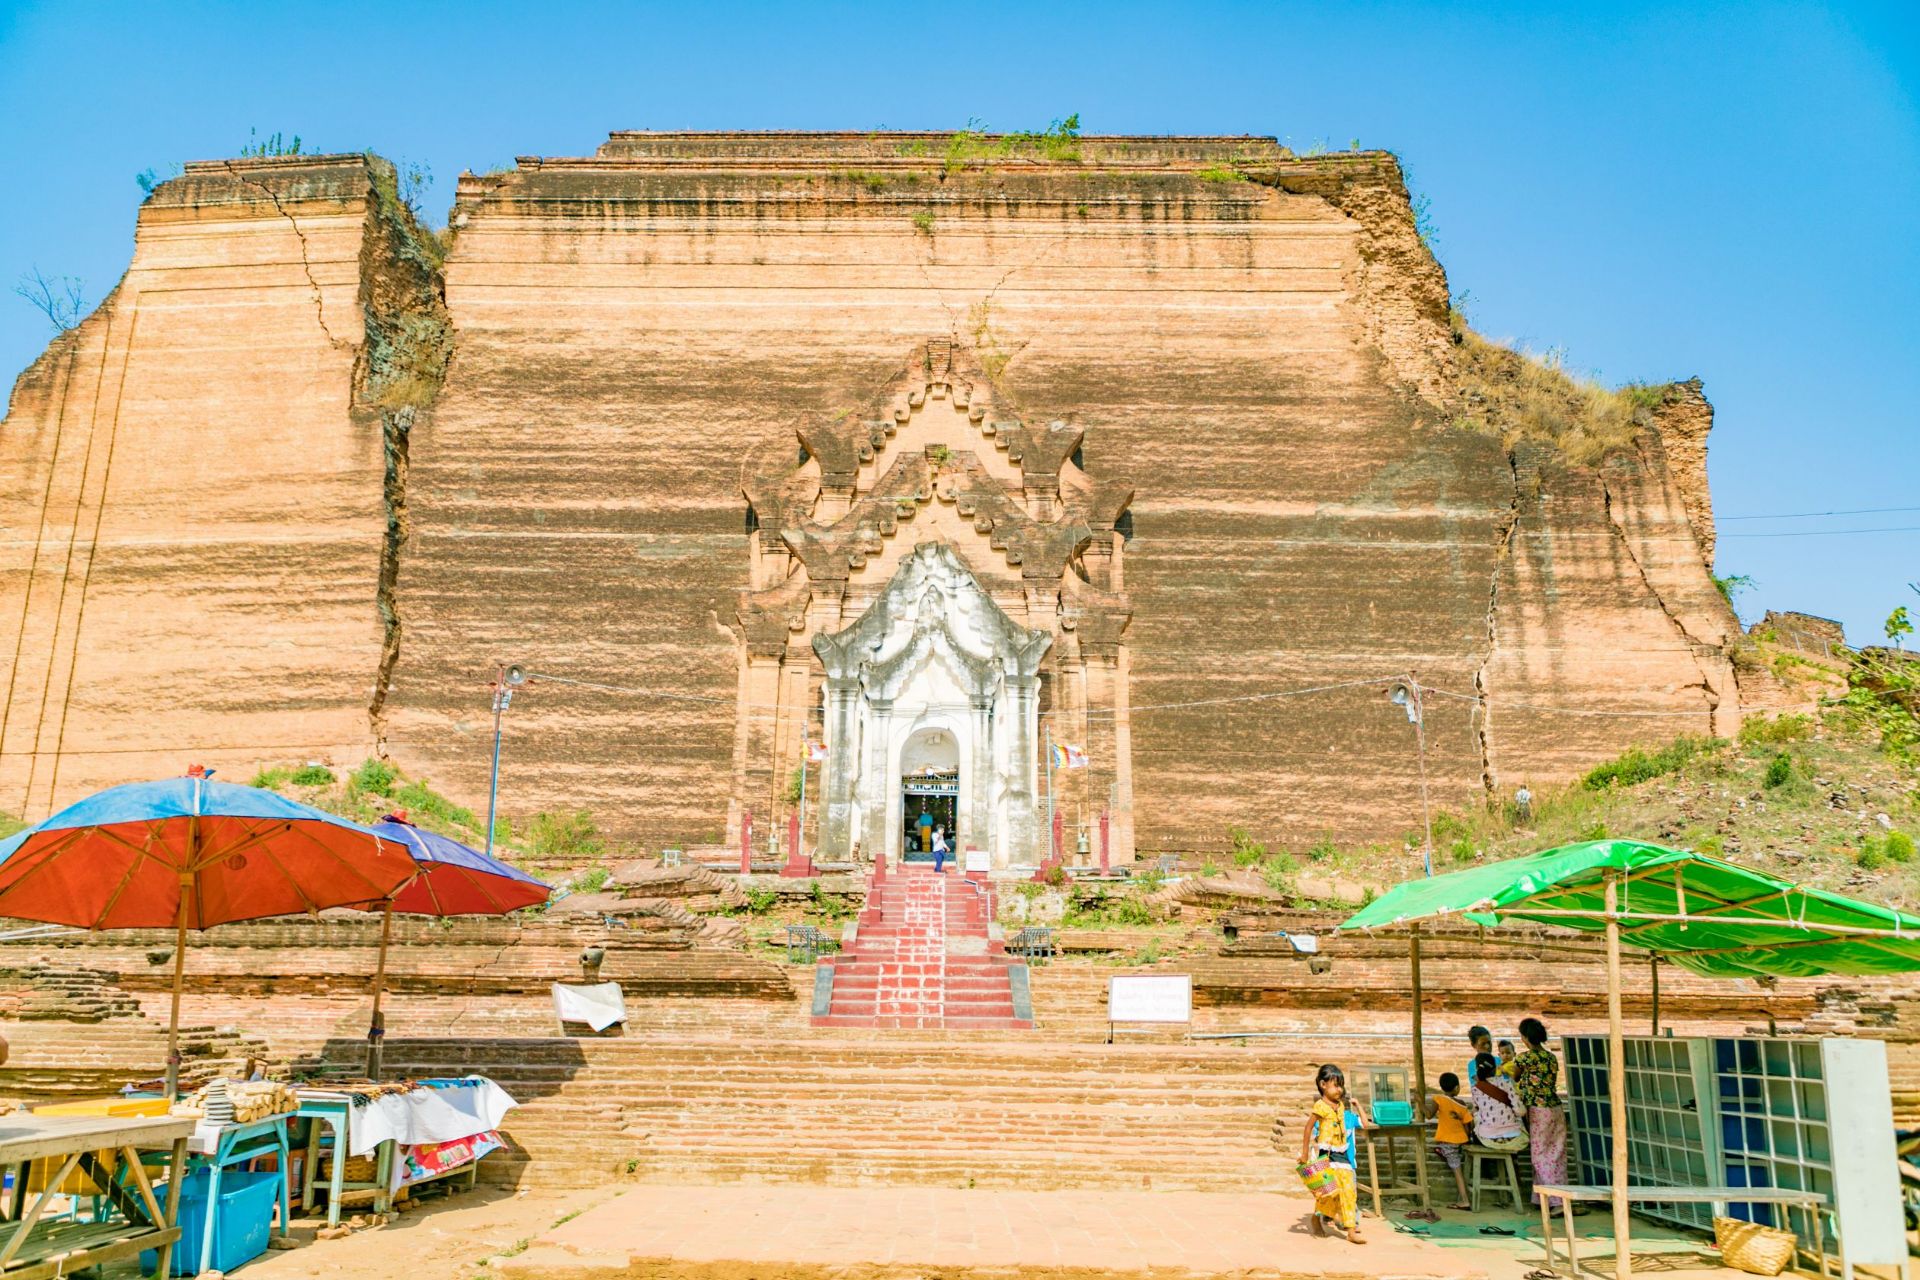 缅甸的寺塔之多，可以让世界游客为之震撼。对于外地人来说，面对几乎相同样貌的庙宇寺塔不免有些“迷茫”，